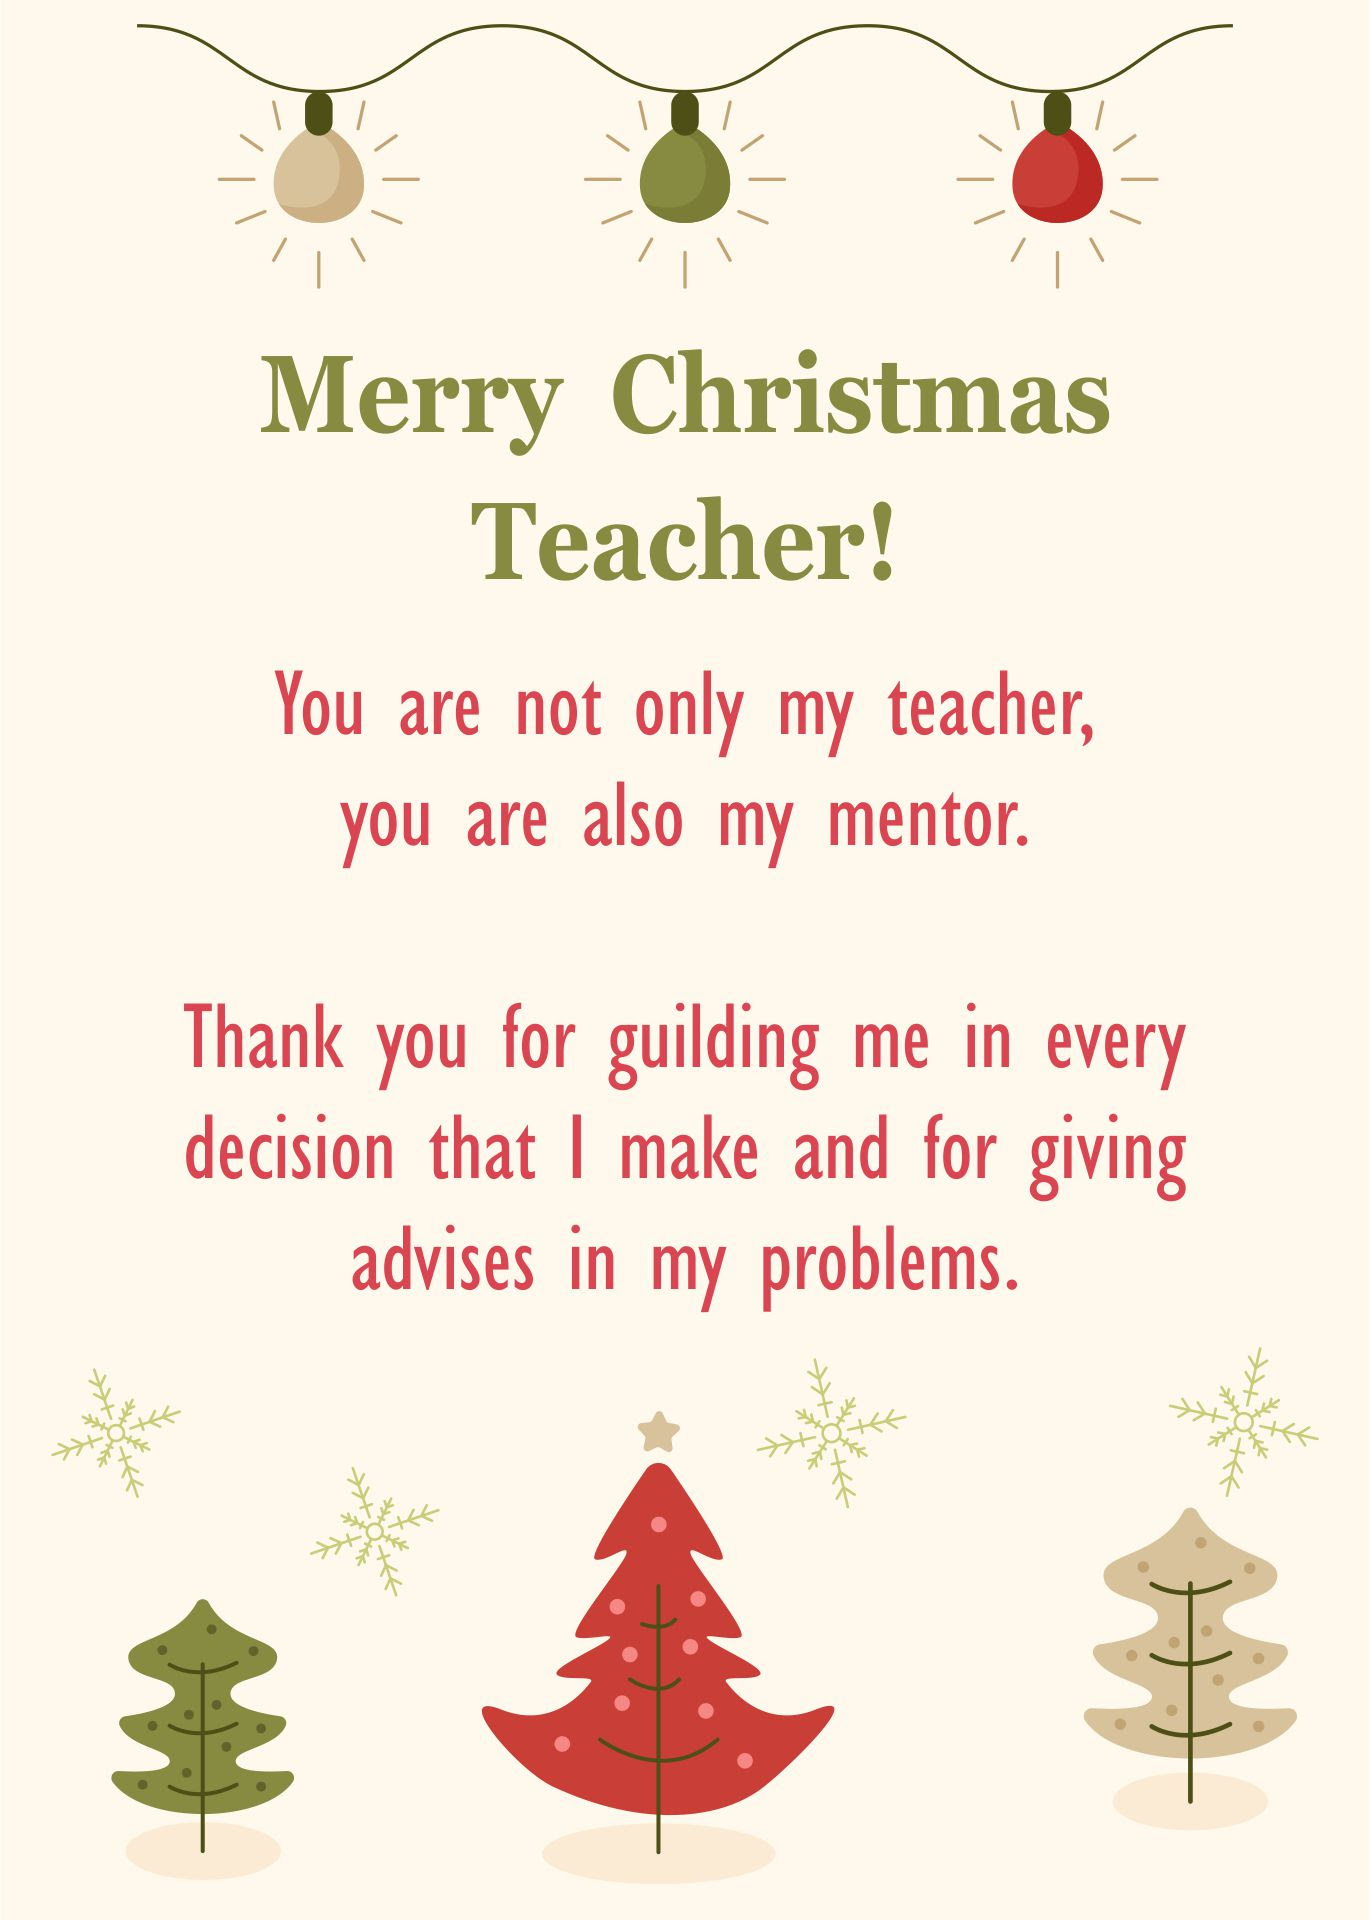 Printable Christmas Cards For Teachers